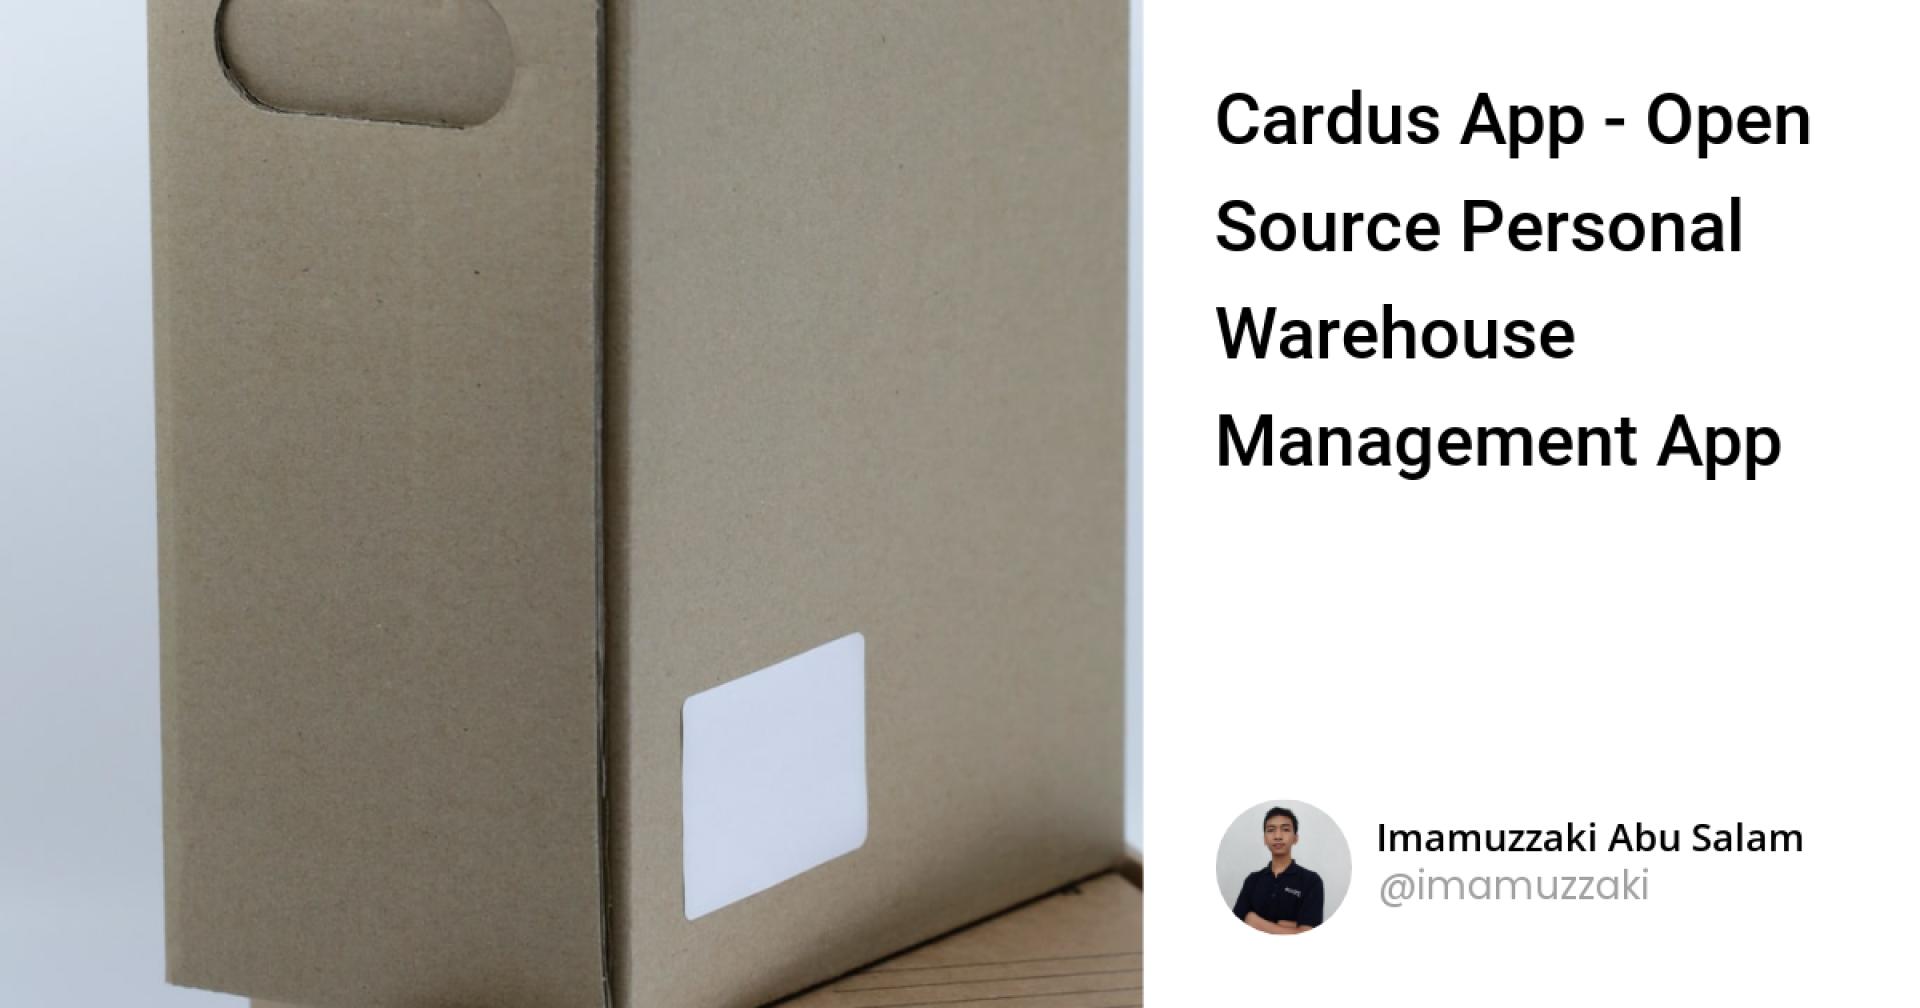 Cardus App - Open Source Personal Warehouse Management App